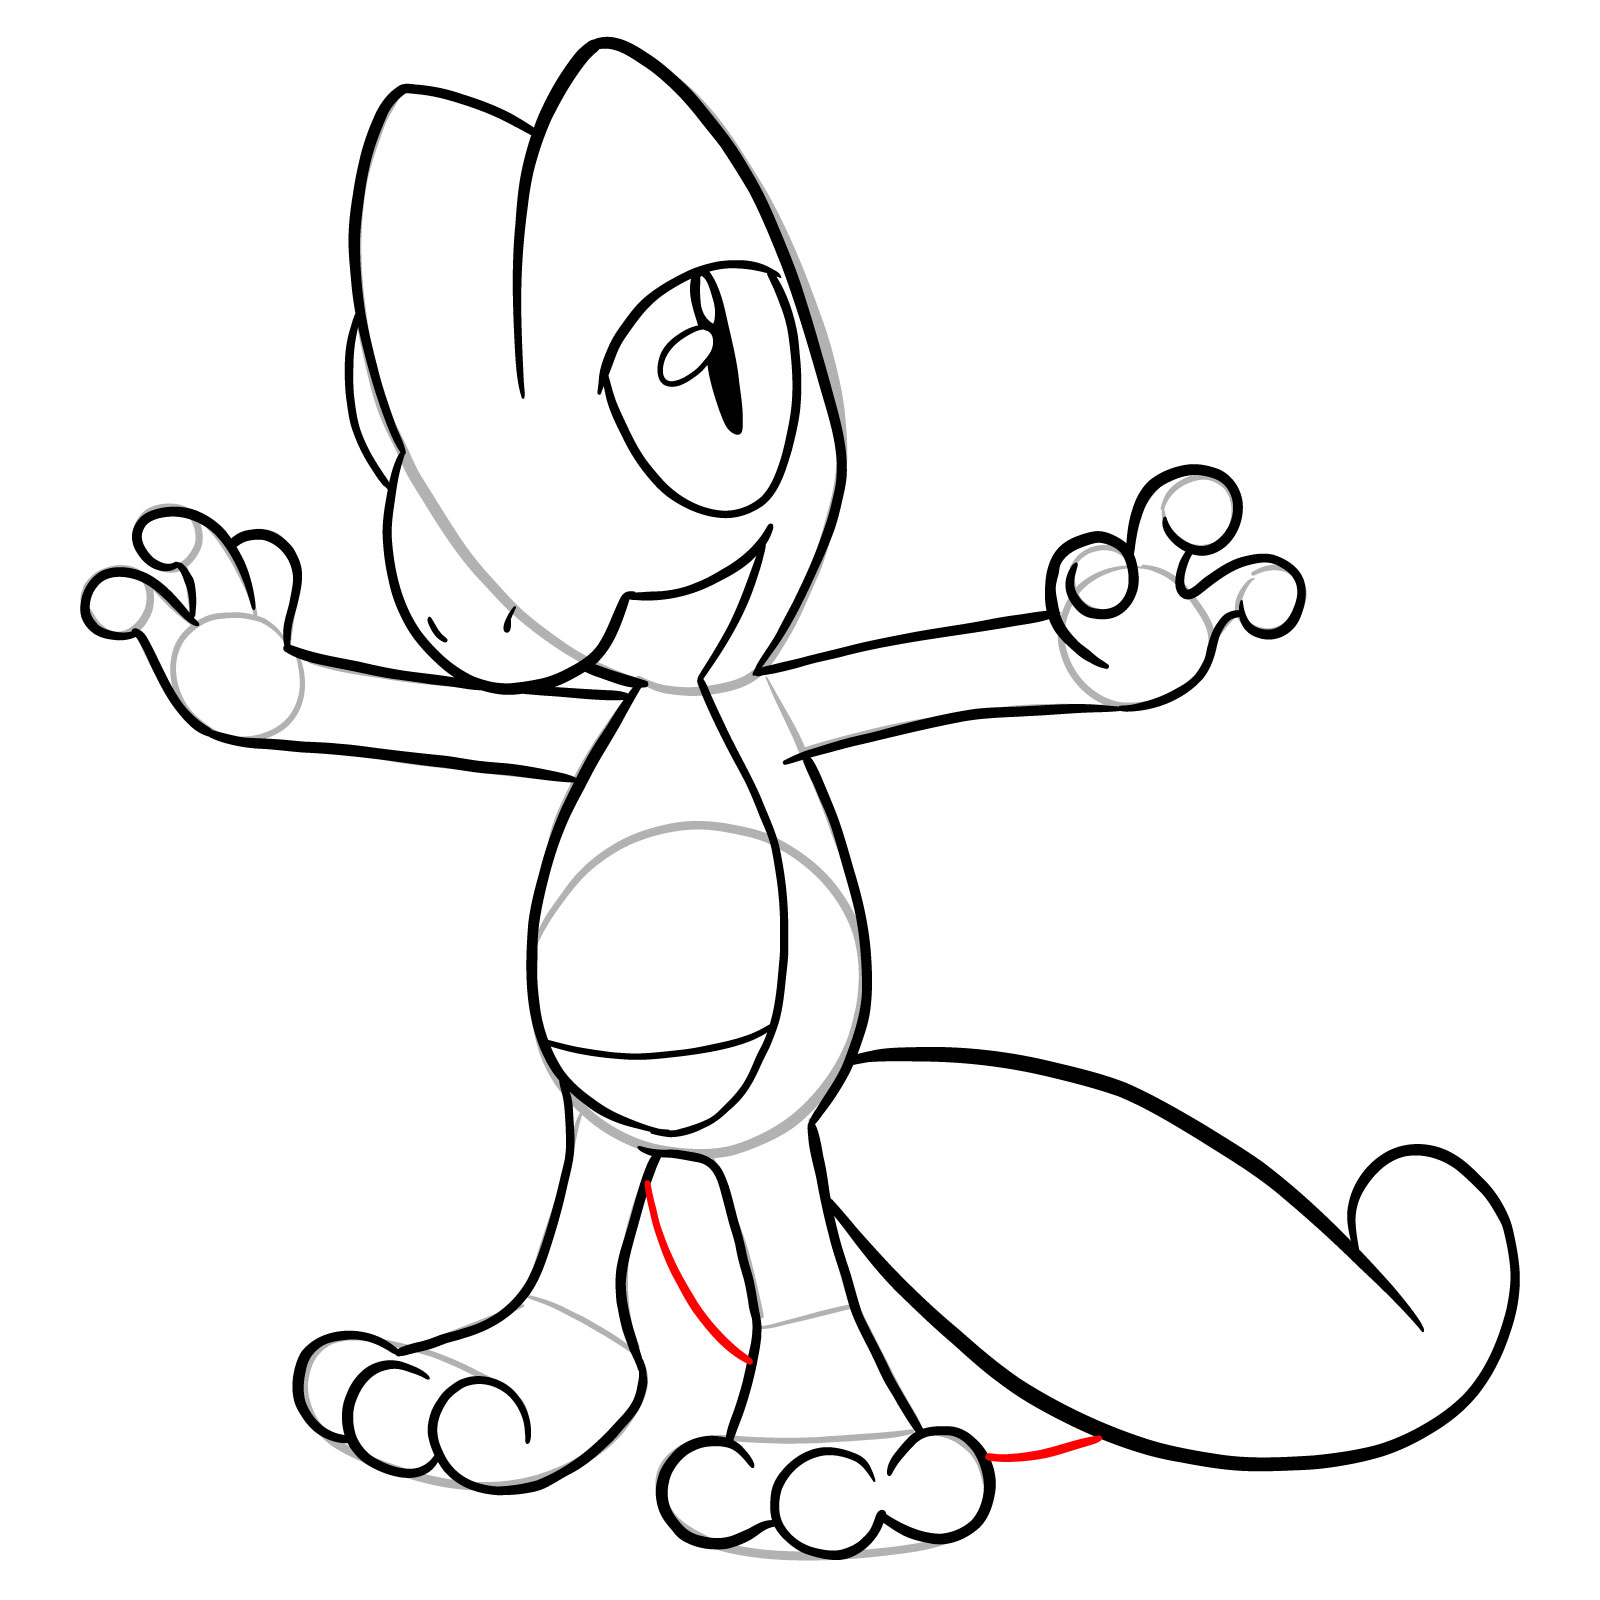 How to draw Treecko Pokemon - step 22